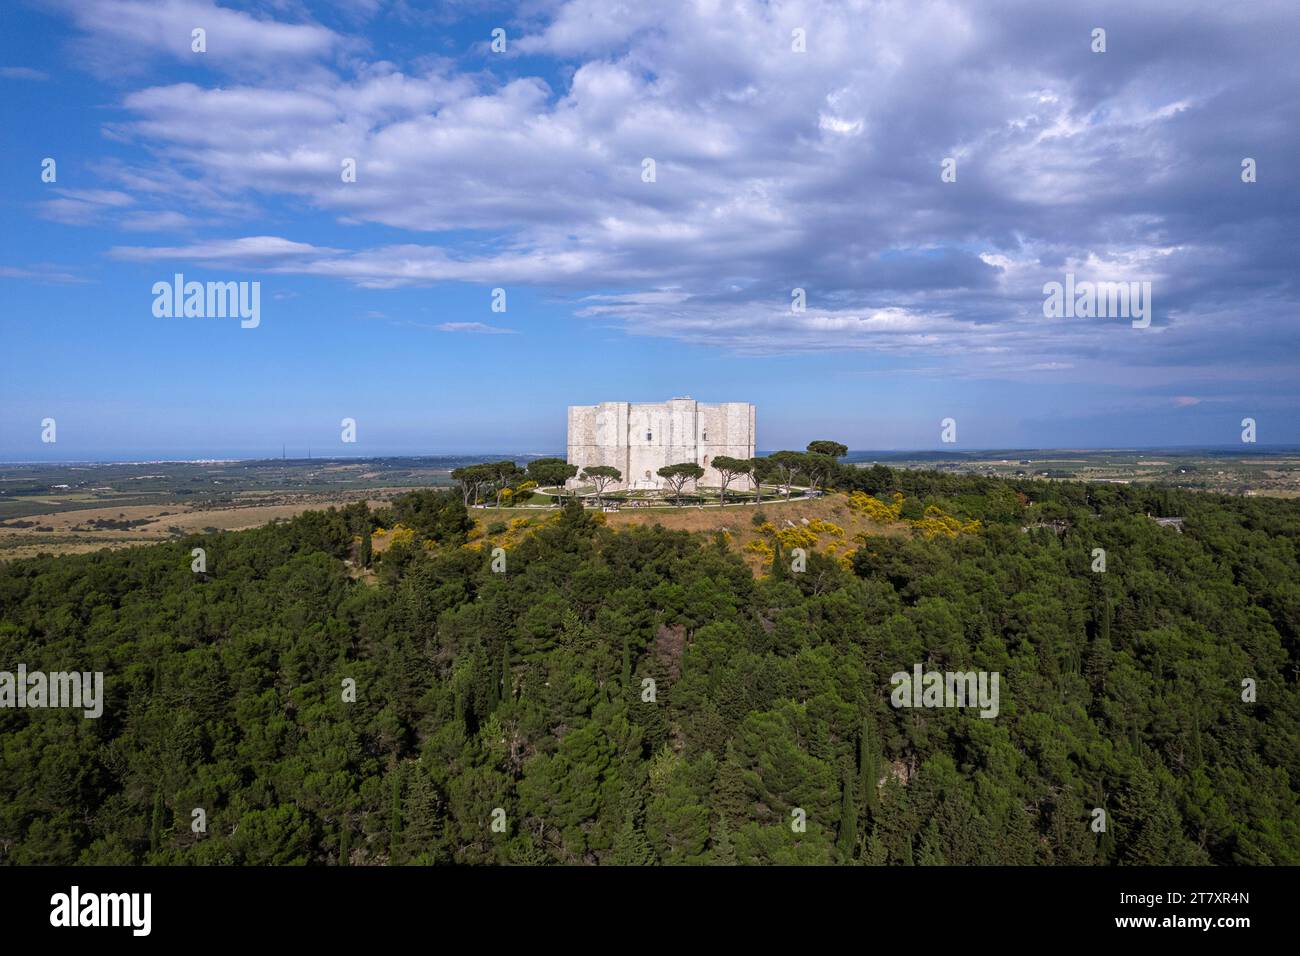 Castel del Monte in cima a una collina circondata da alberi, vista aerea, sito patrimonio dell'umanità dell'UNESCO, Puglia, Italia meridionale, Europa Foto Stock